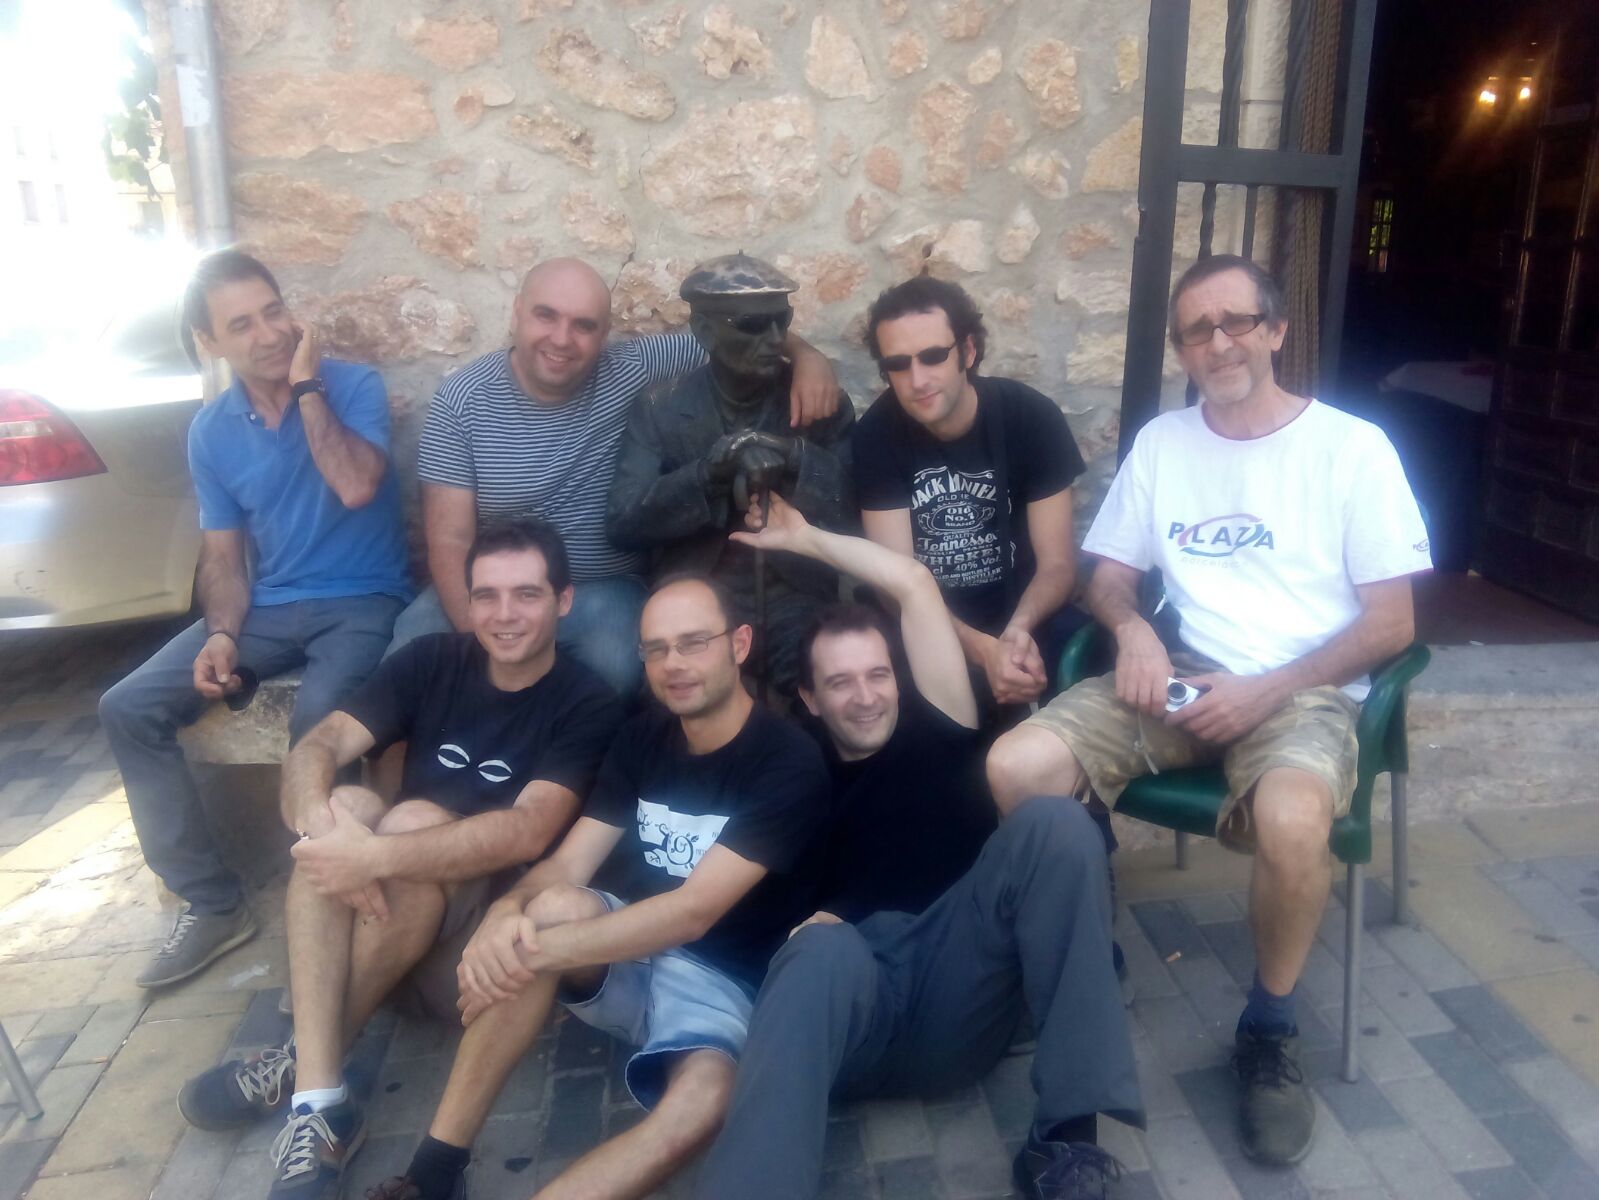 Orquesta The 8 y 1/2 Band. Mecerreyes, agosto 2015